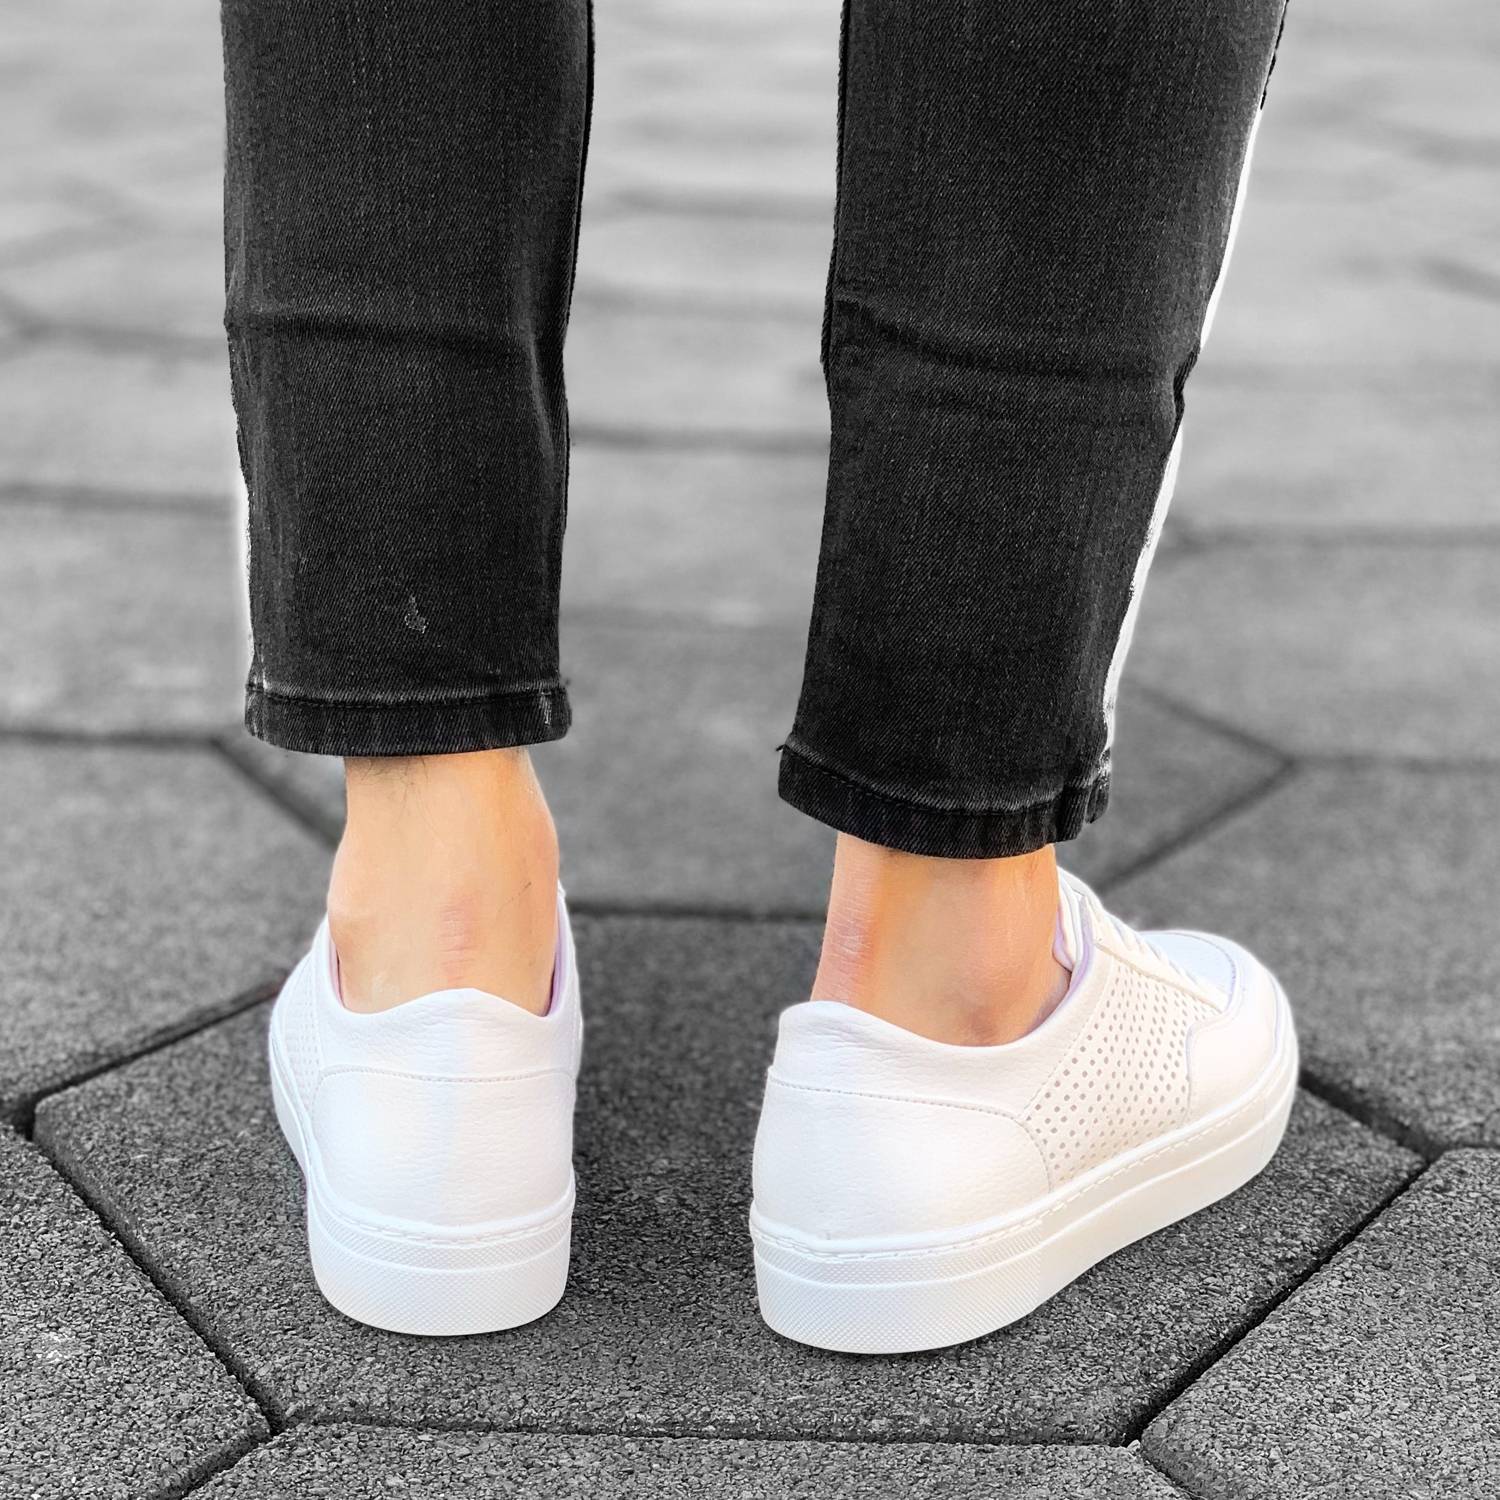 stylish shoes white